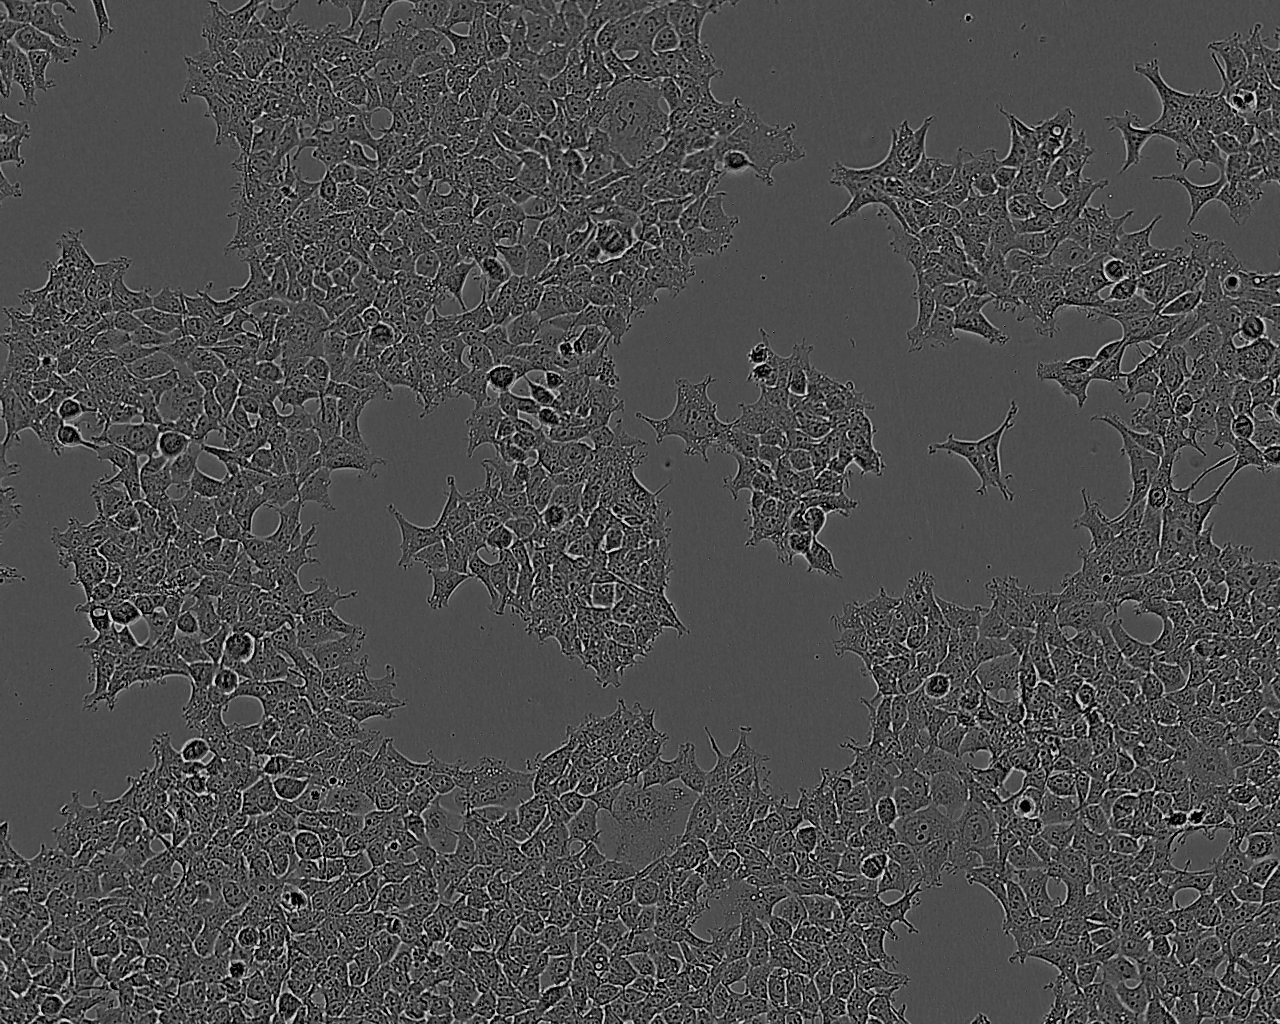 BNL 1ME A.7R.1:小鼠肝上皮复苏细胞(提供STR鉴定图谱)